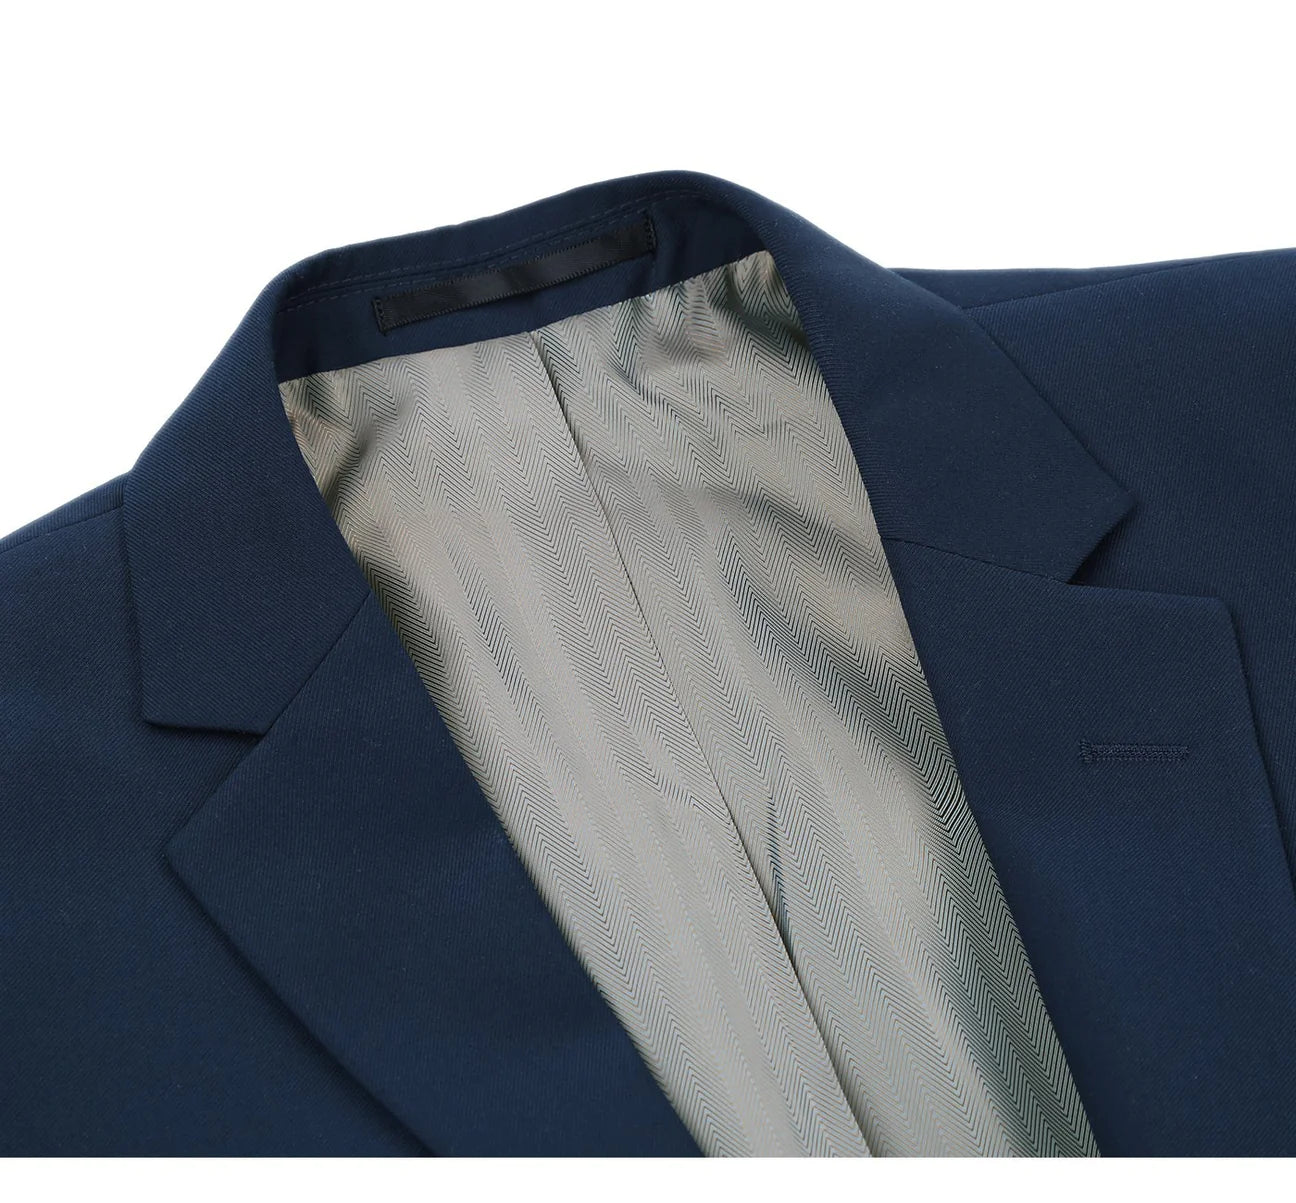 Renoir Slim Fit Navy 2 Button Notch Lapel Suit